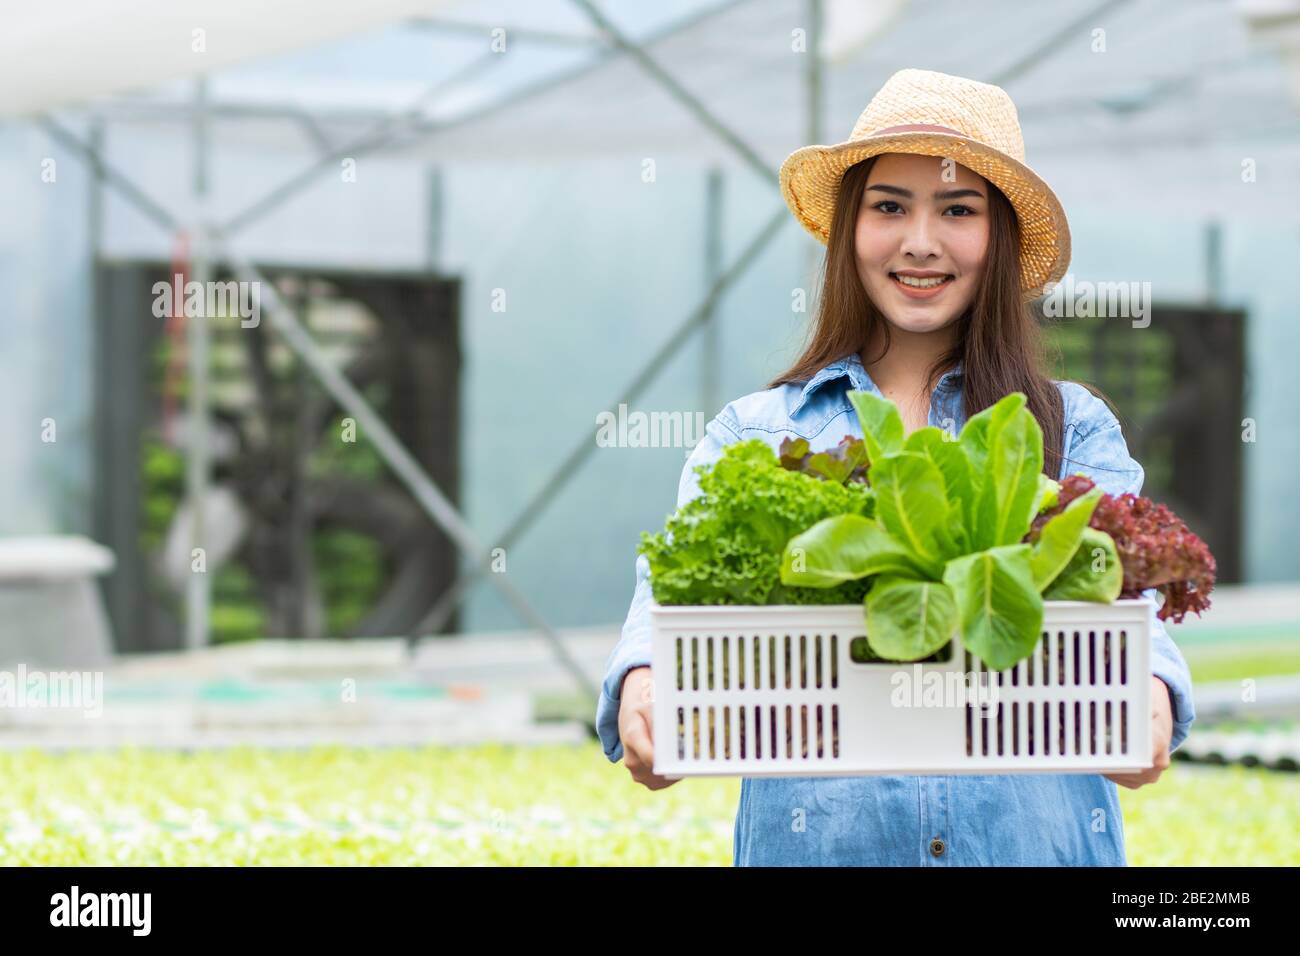 Une ferme de légumes biologiques saine, heureusement attrayante propriétaire de femme caisse pleine de légumes hydroponiques, tenir et combiner des plantes dans le panier dans la purée Banque D'Images